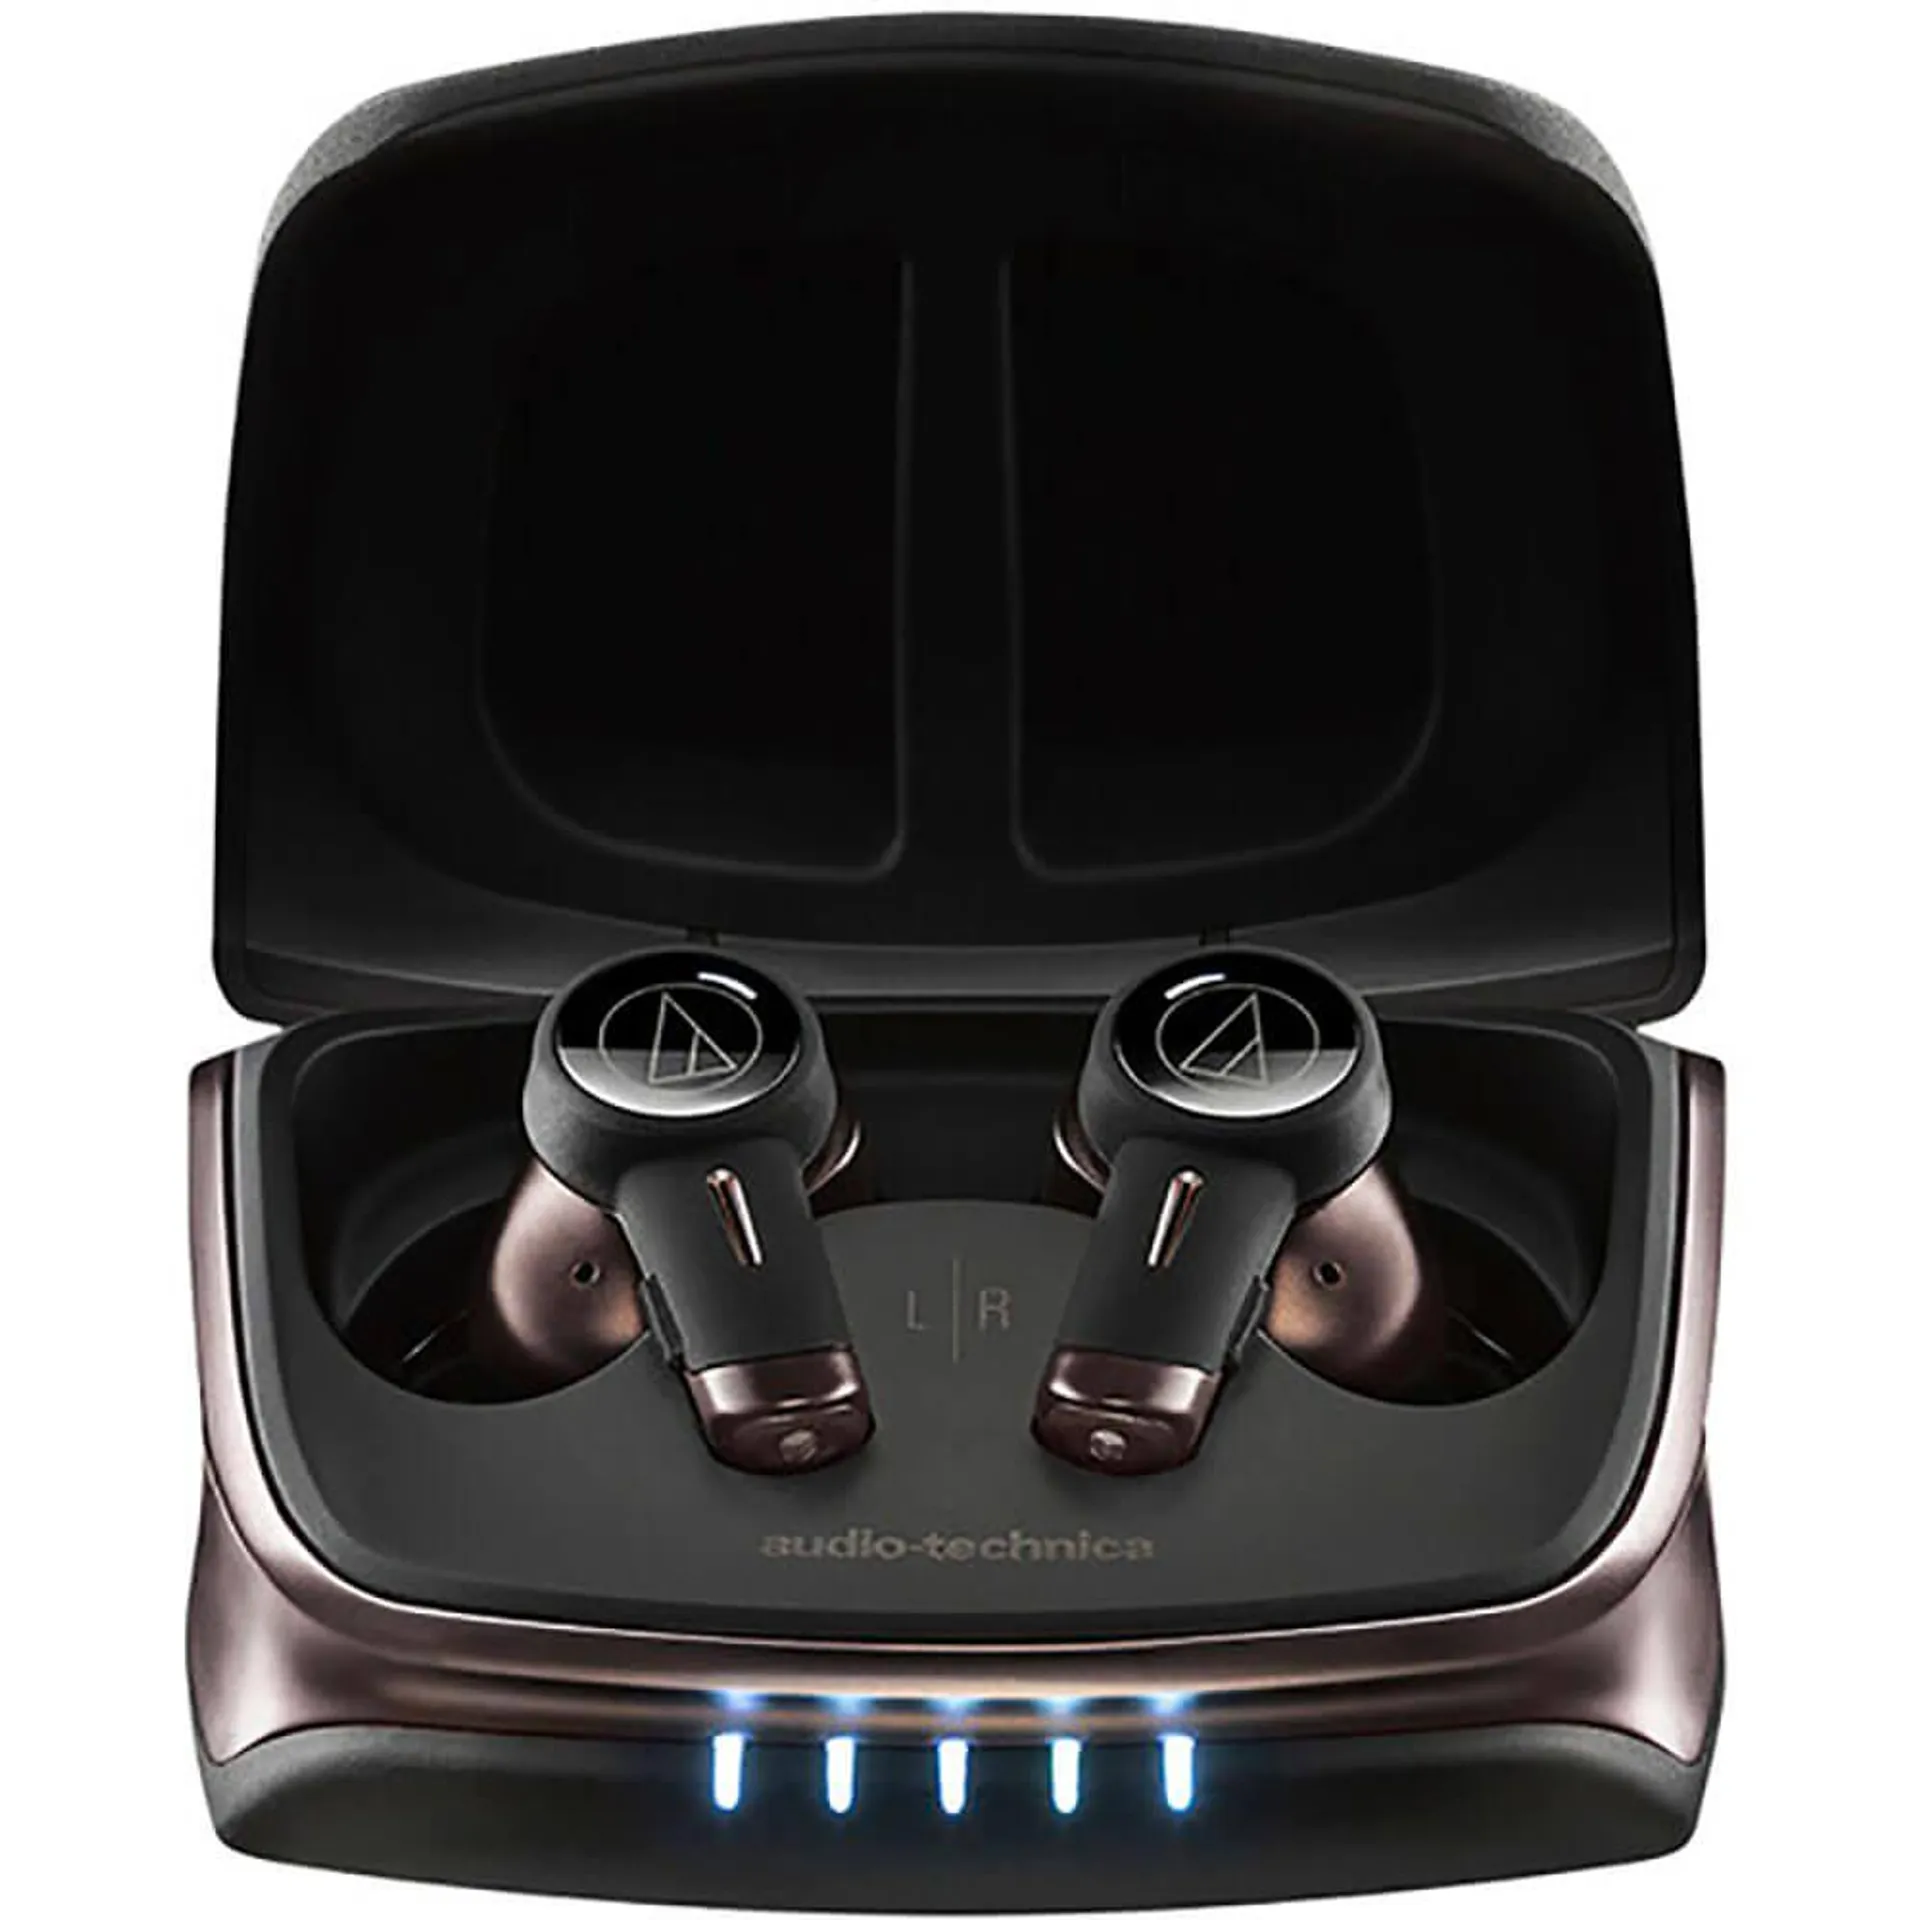 TWX9 Noise-Canceling True Wireless In-Ear Headphones - Black